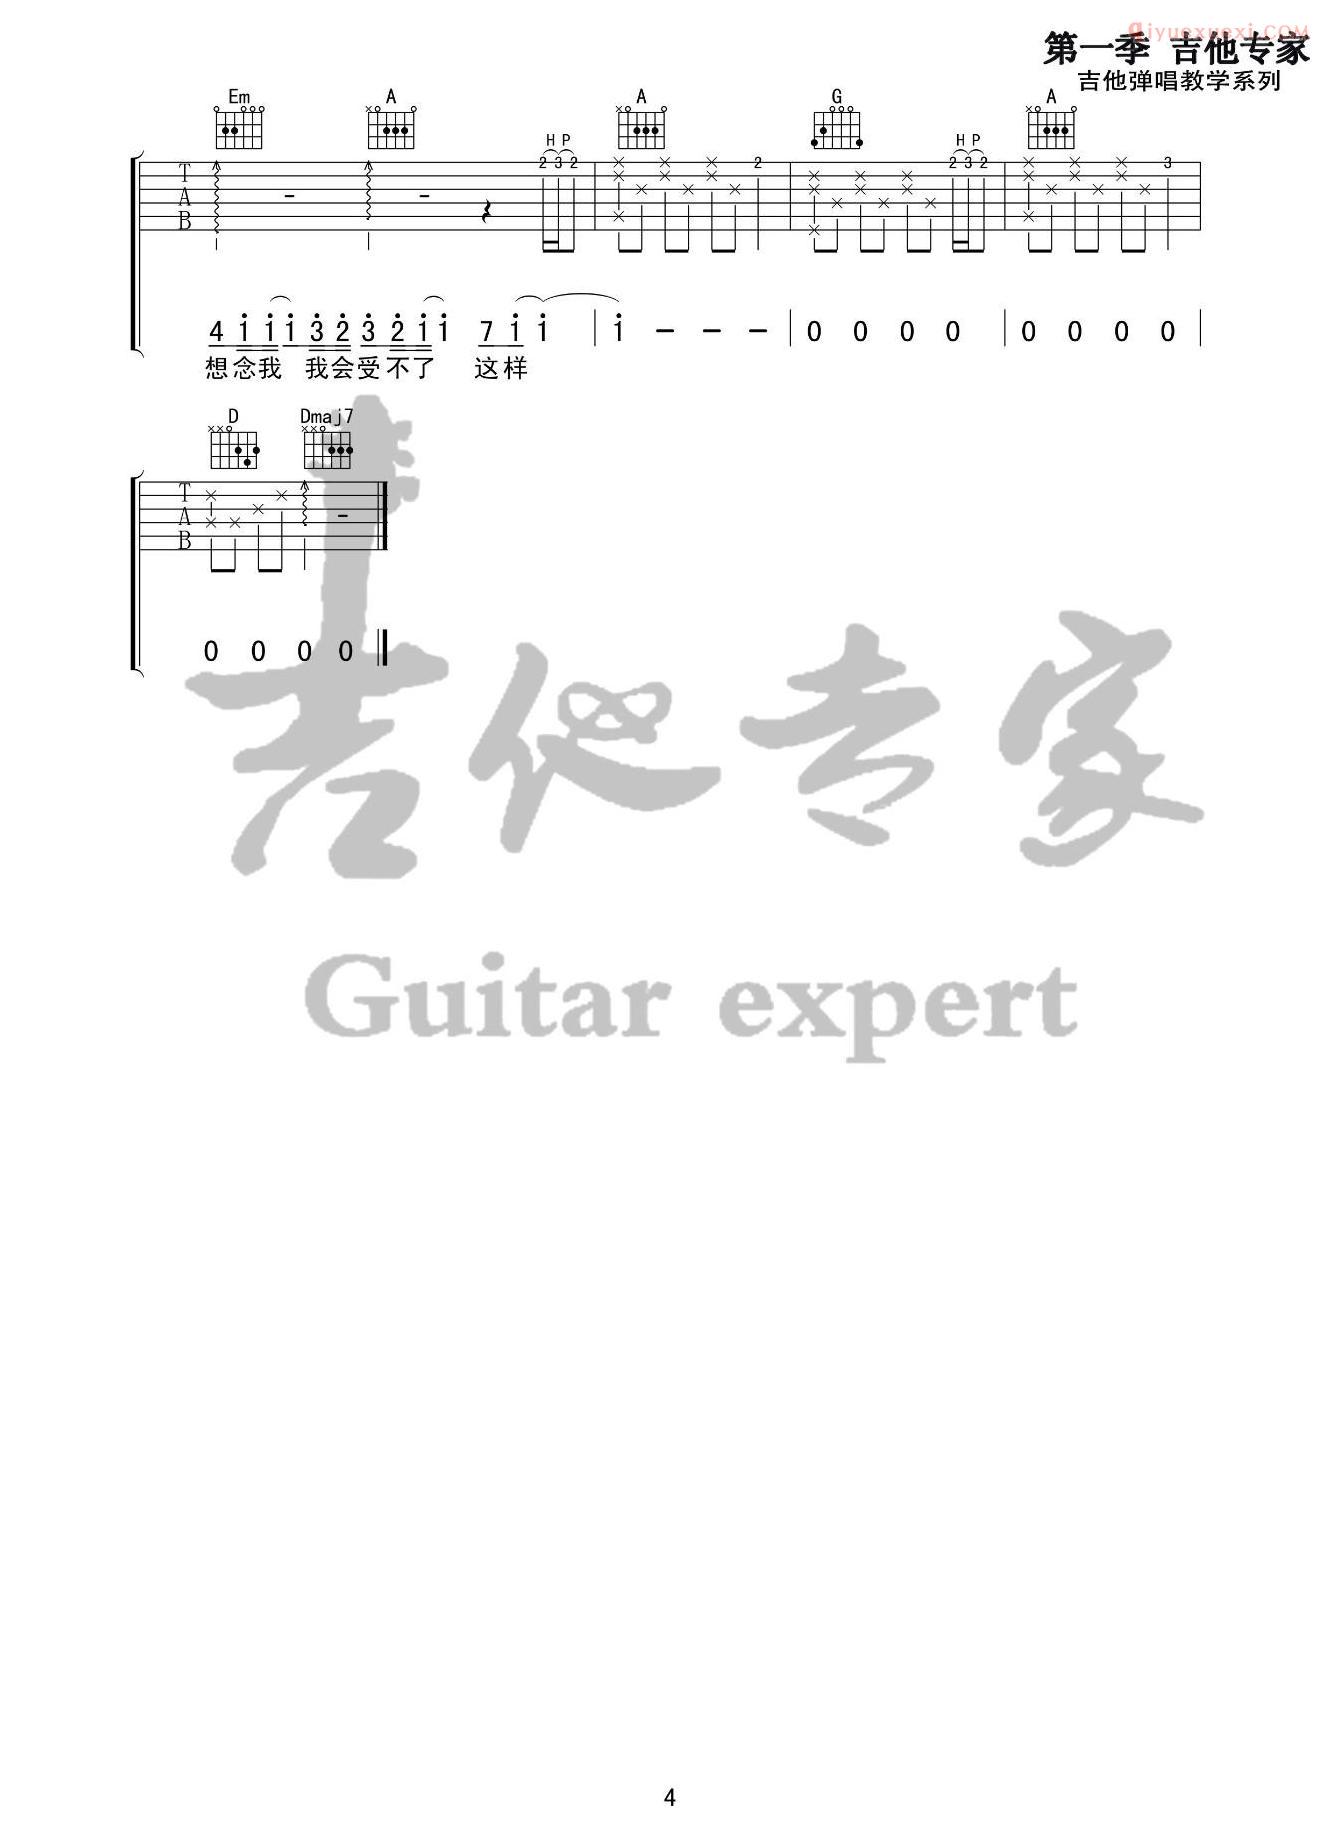 吉他资料网-修炼爱情吉他谱-4